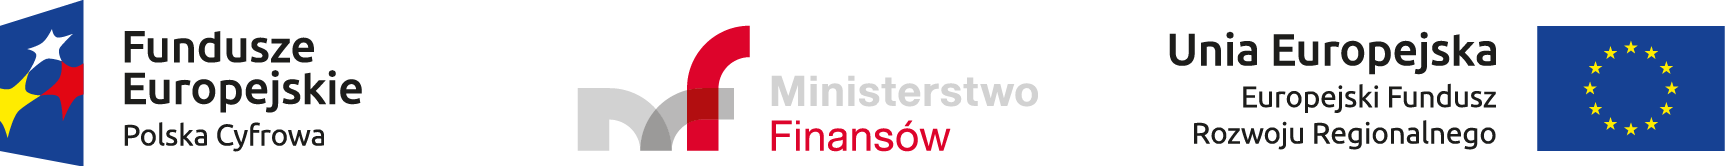 logo Fundusze Europejskie Polska Cyfrowa, logo Ministerstwo Finansów, logo Unia Europejska Europejski Fundusz Rozwoju Regionalnego